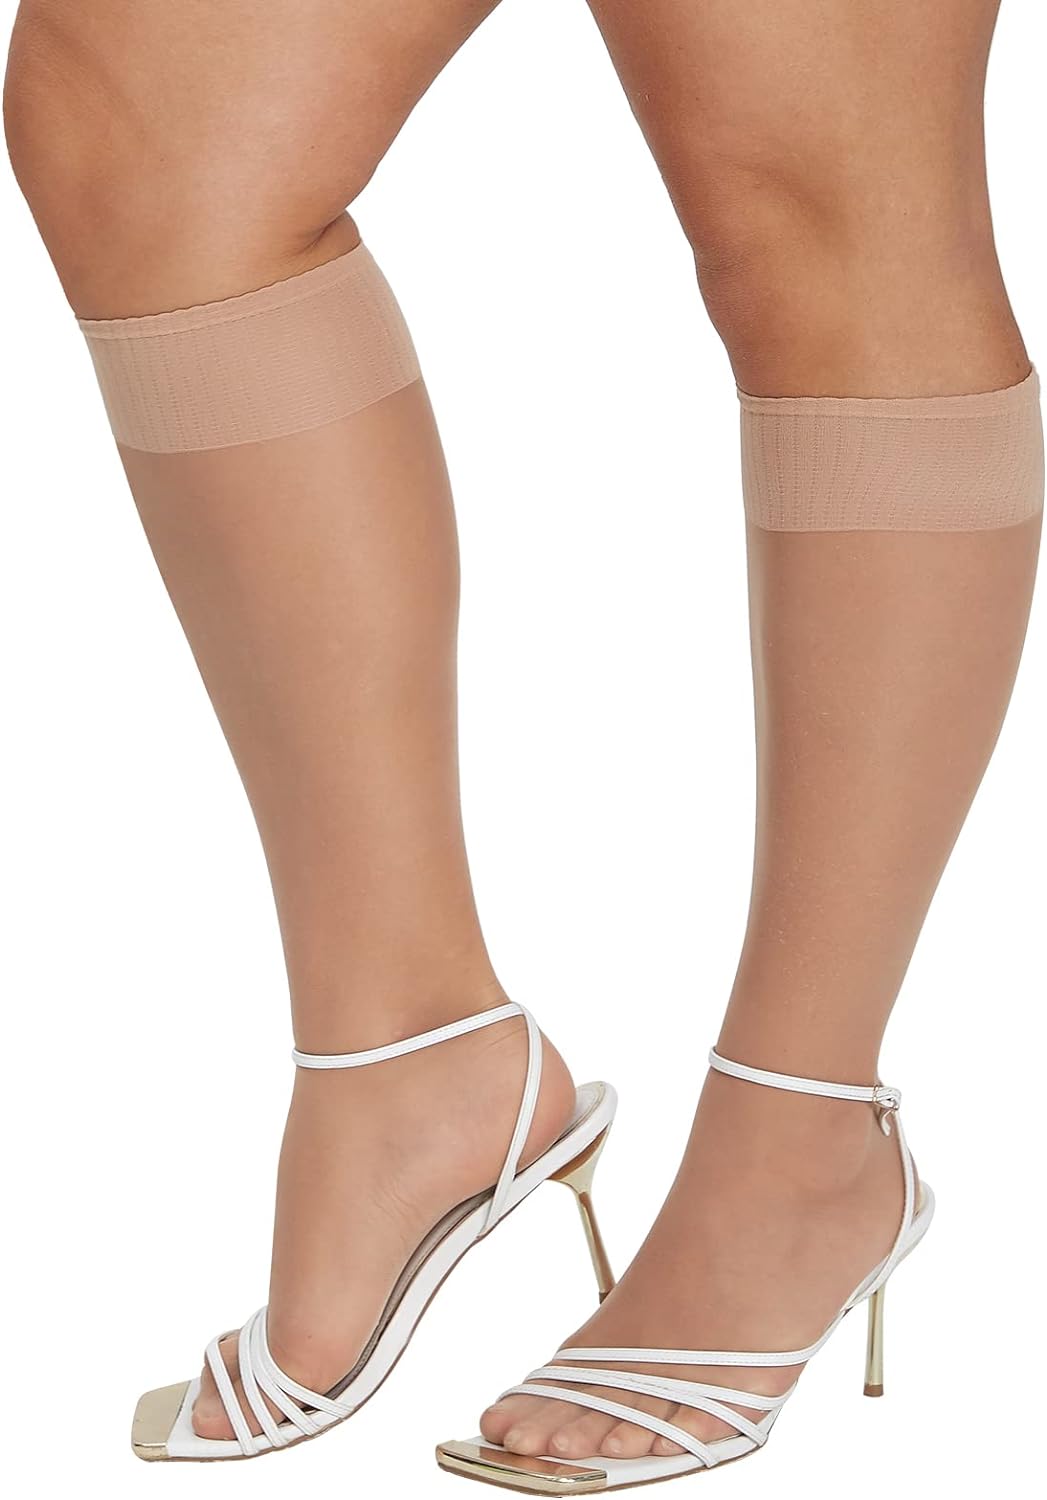 MANZI 12 Pairs Women's Ankle High Sheer Socks…